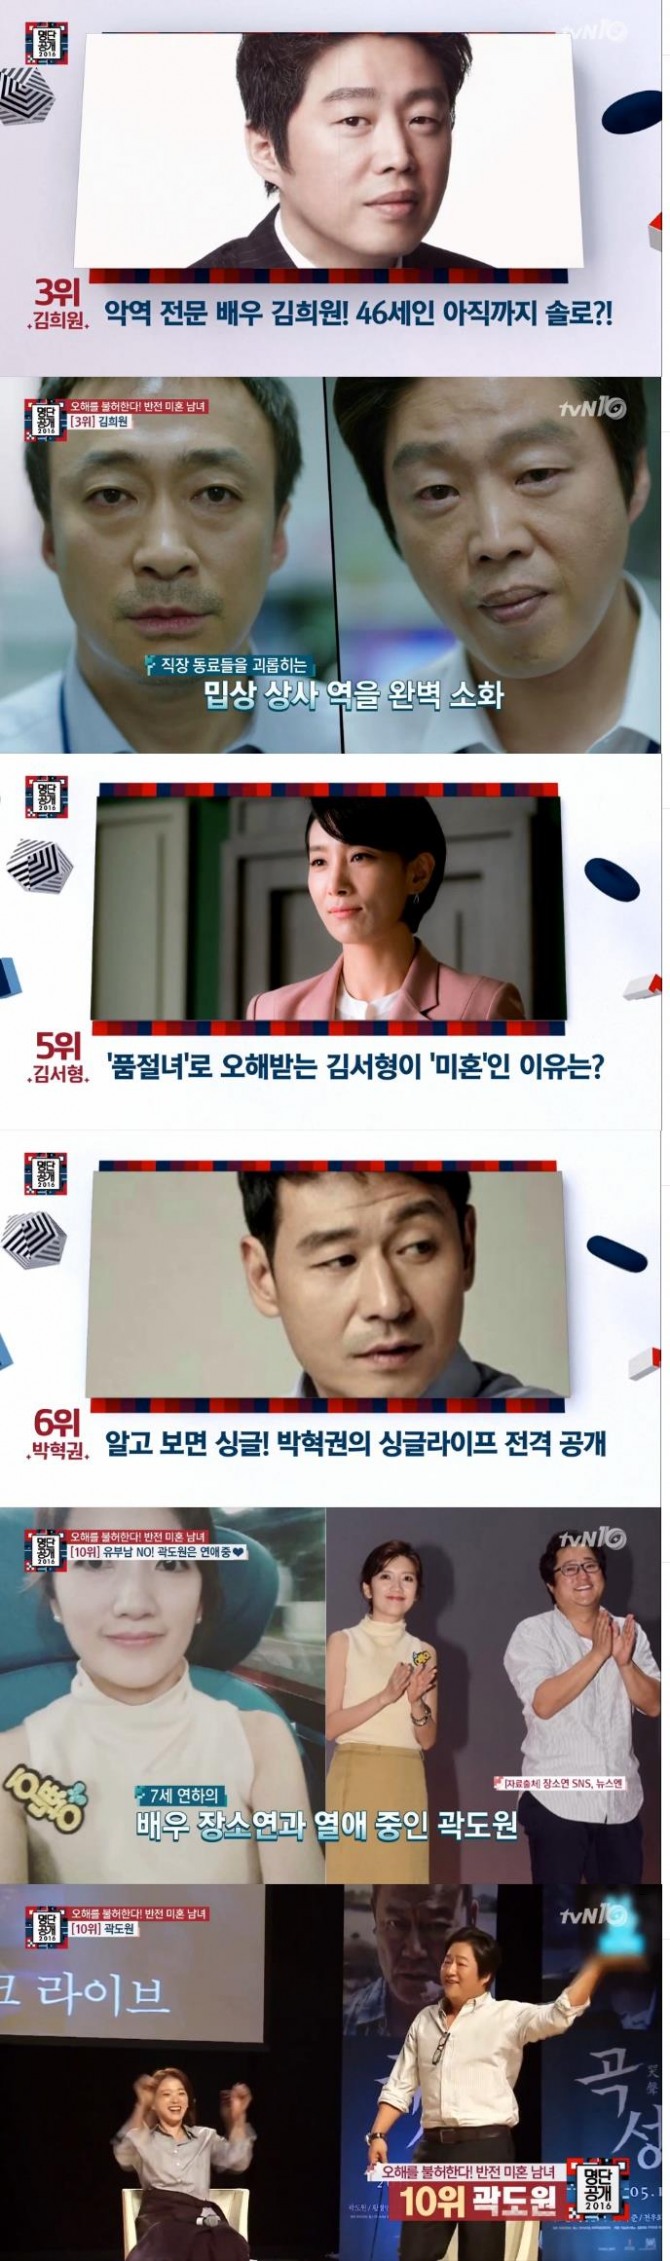 10일 밤 방송된 tvN '명단공개'에서는 '알고 보면 싱글스타' 순위가 발표된 가운데 도지원, 주진모, 김희원, 김승수 등이 이름을 올렸다./사진=tvN 방송 캡처